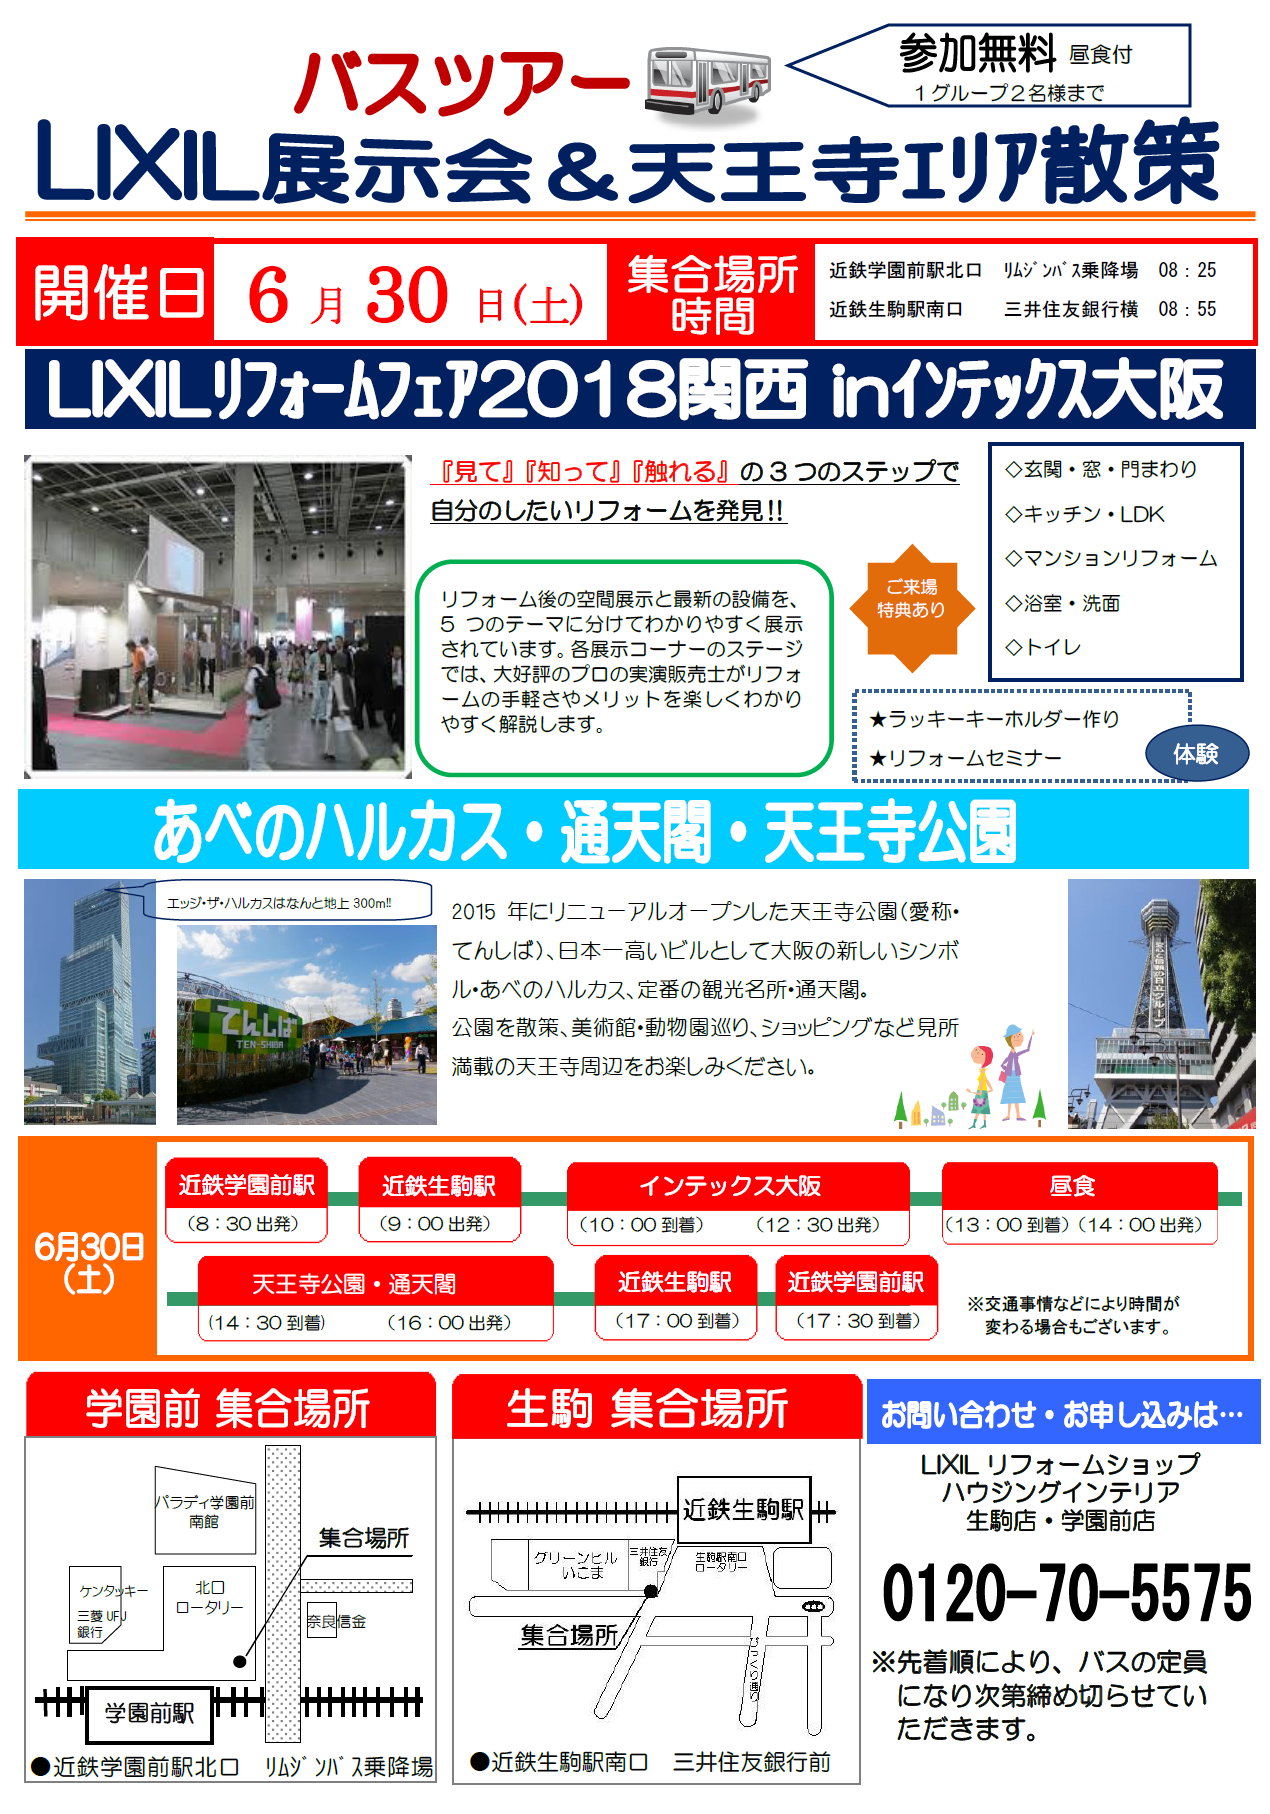 https://www.lixil-reformshop.jp/shop/SC00291002/photos/8f1ec24659adf75ab1315068712c9c10f1f20d4c.png